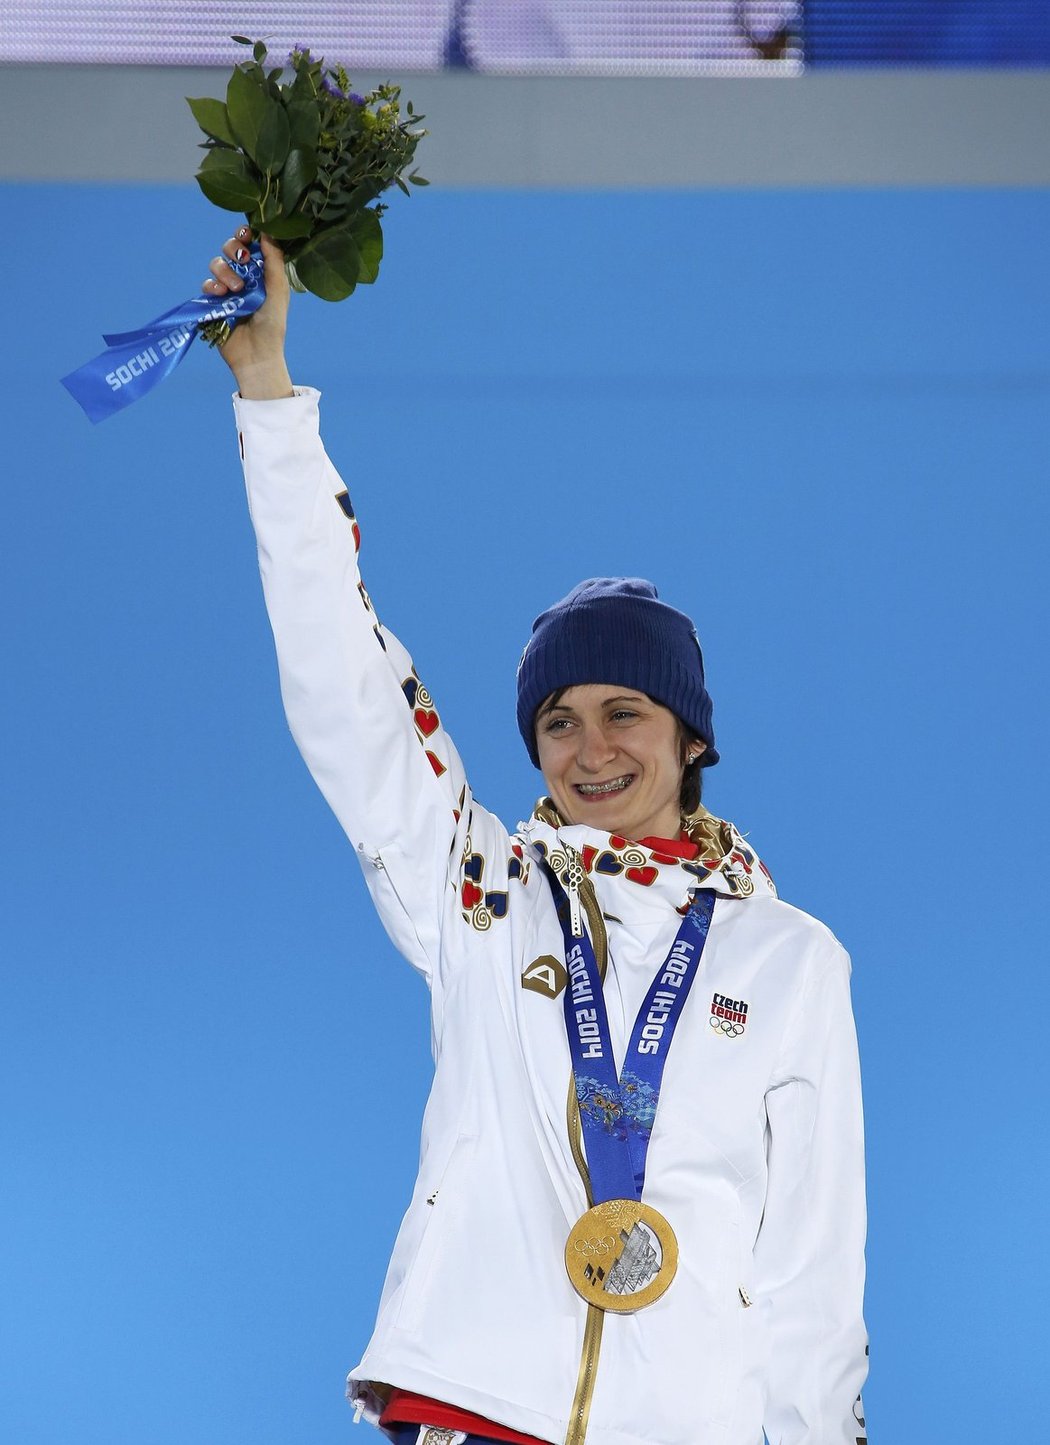 Ve středečních olympijských bojích se českým sportovcům dařilo. Nejdříve vybojovala Martina Sáblíková zlatou medaili z rychlobruslení na 5000 metrů, následně se podařilo českým biatlonistům vyhrát stříbro ve smíšené štafetě. Medaile už při slavnostním předávání obdrželi.